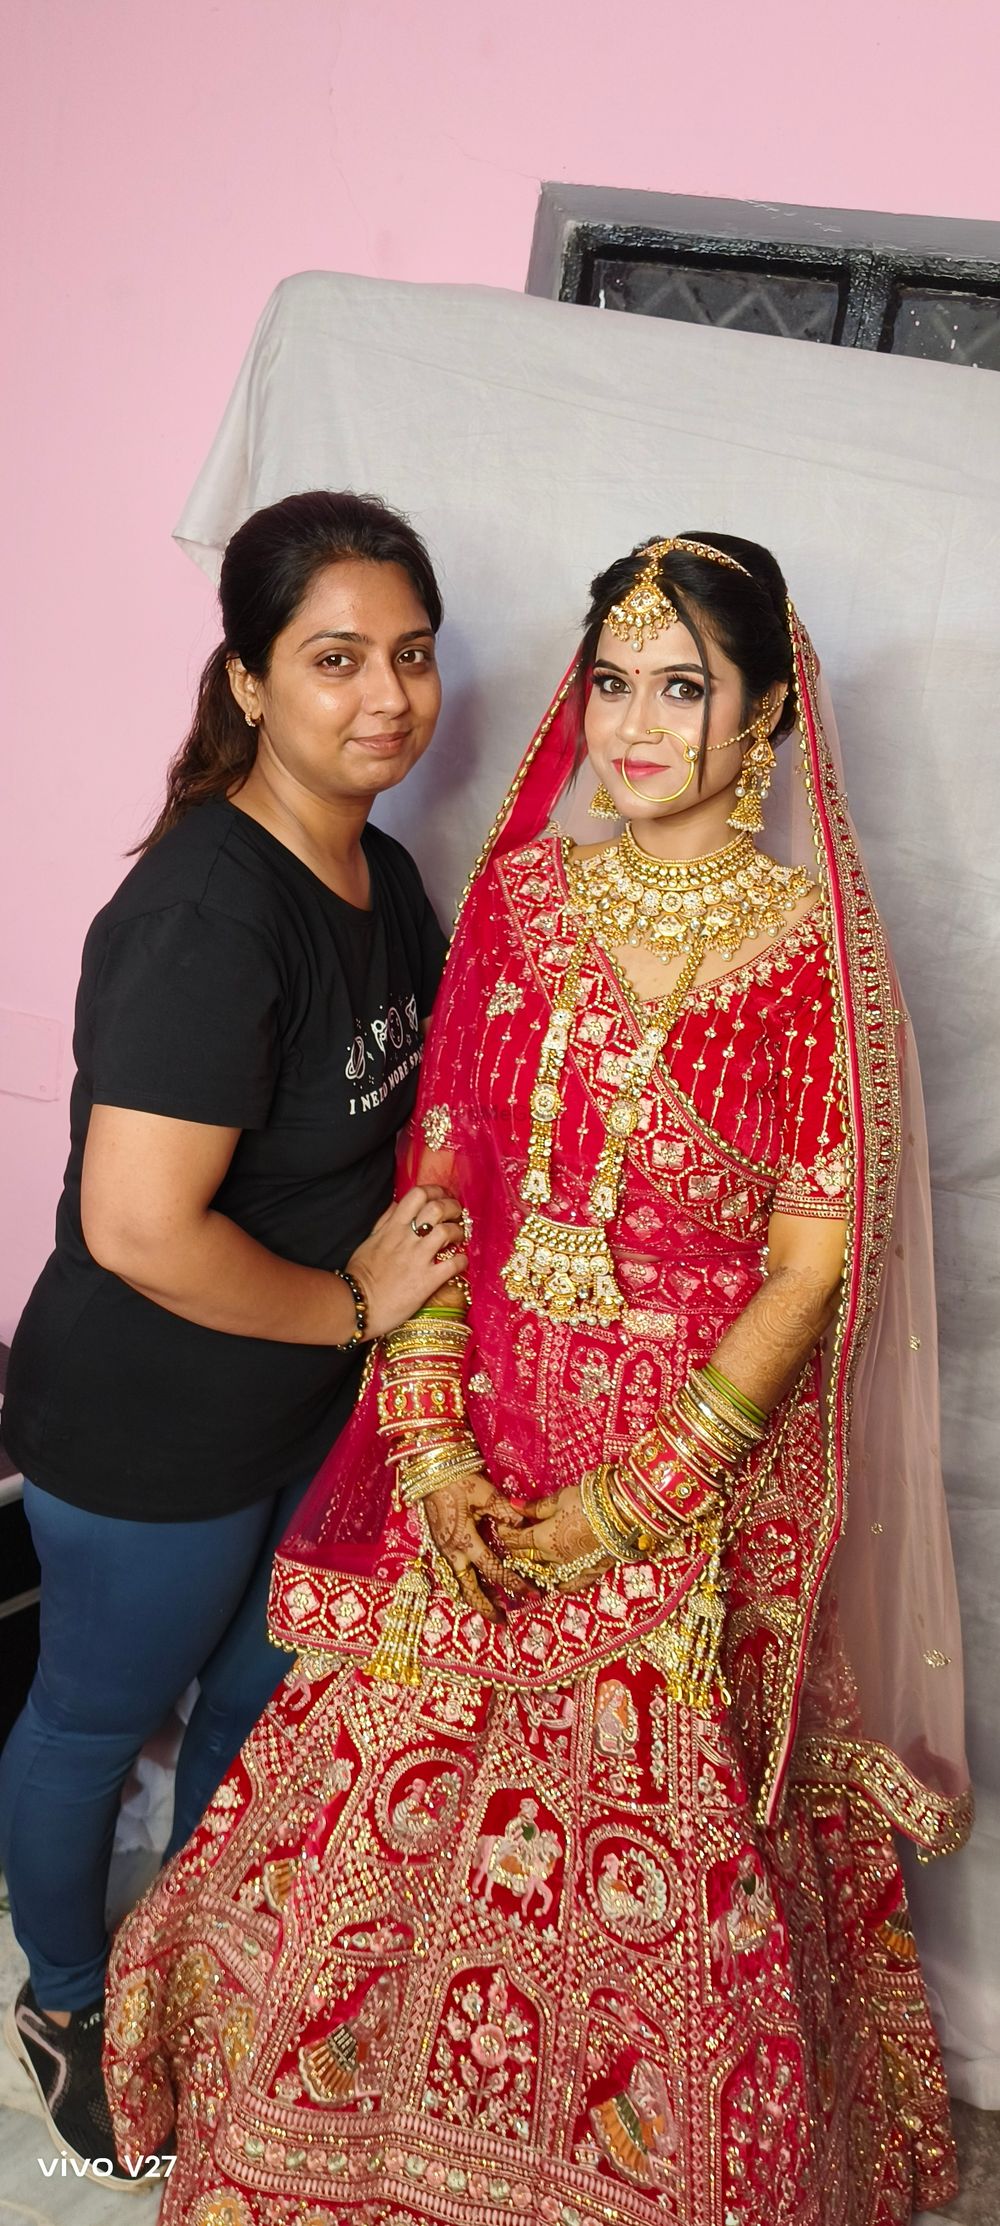 Photo By Shivani Artistry Mua - Bridal Makeup